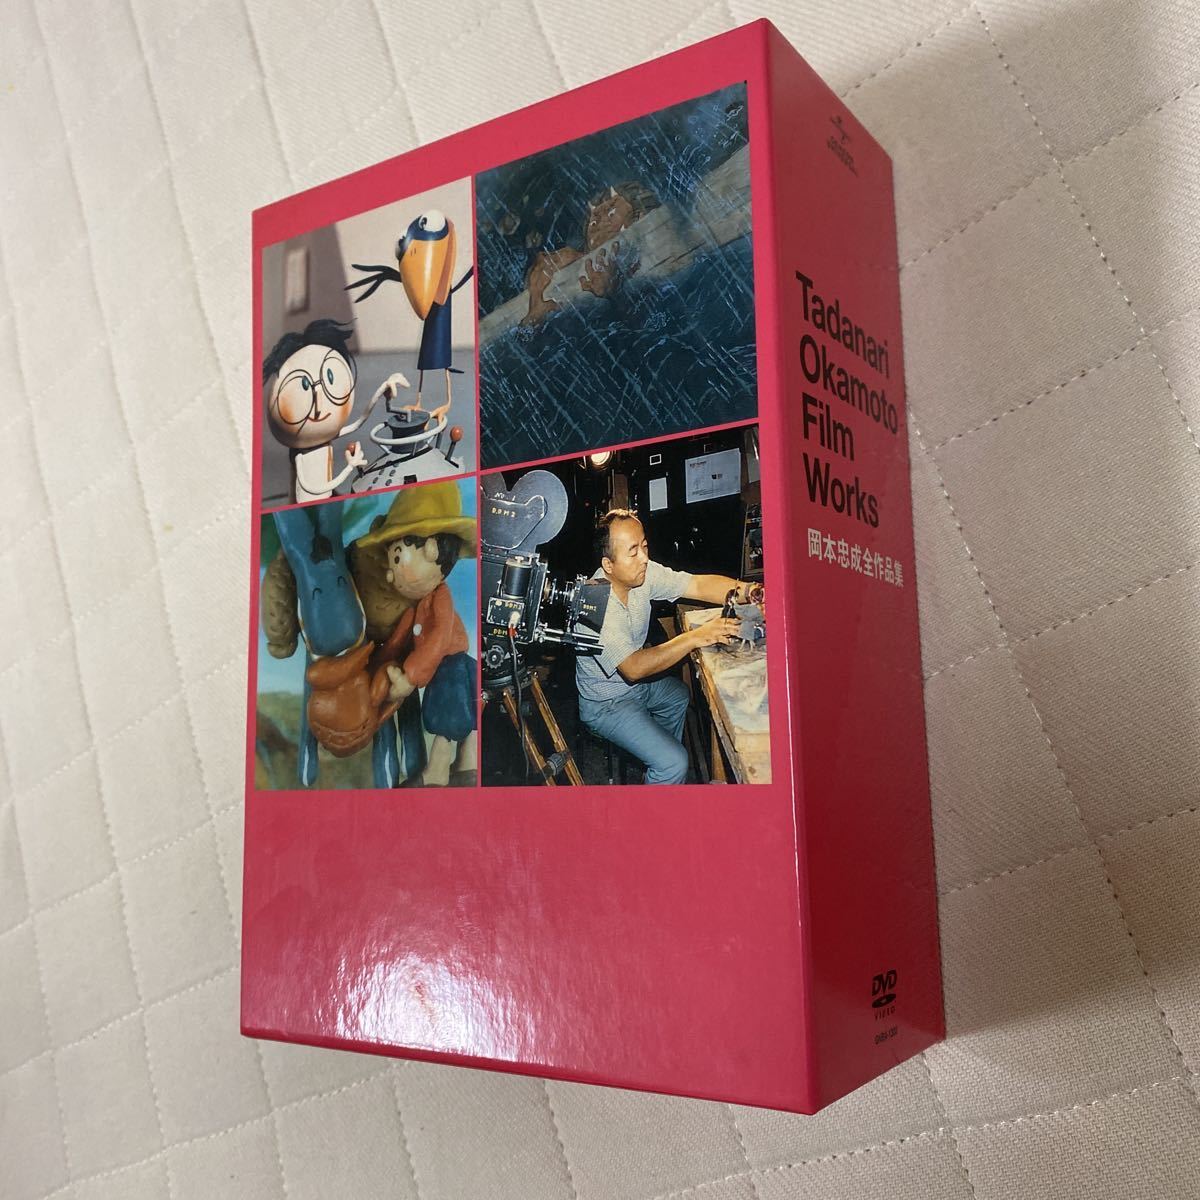 Yahoo!オークション - DVD-BOX 4枚組 岡本忠成作品集 おこんじょうるり